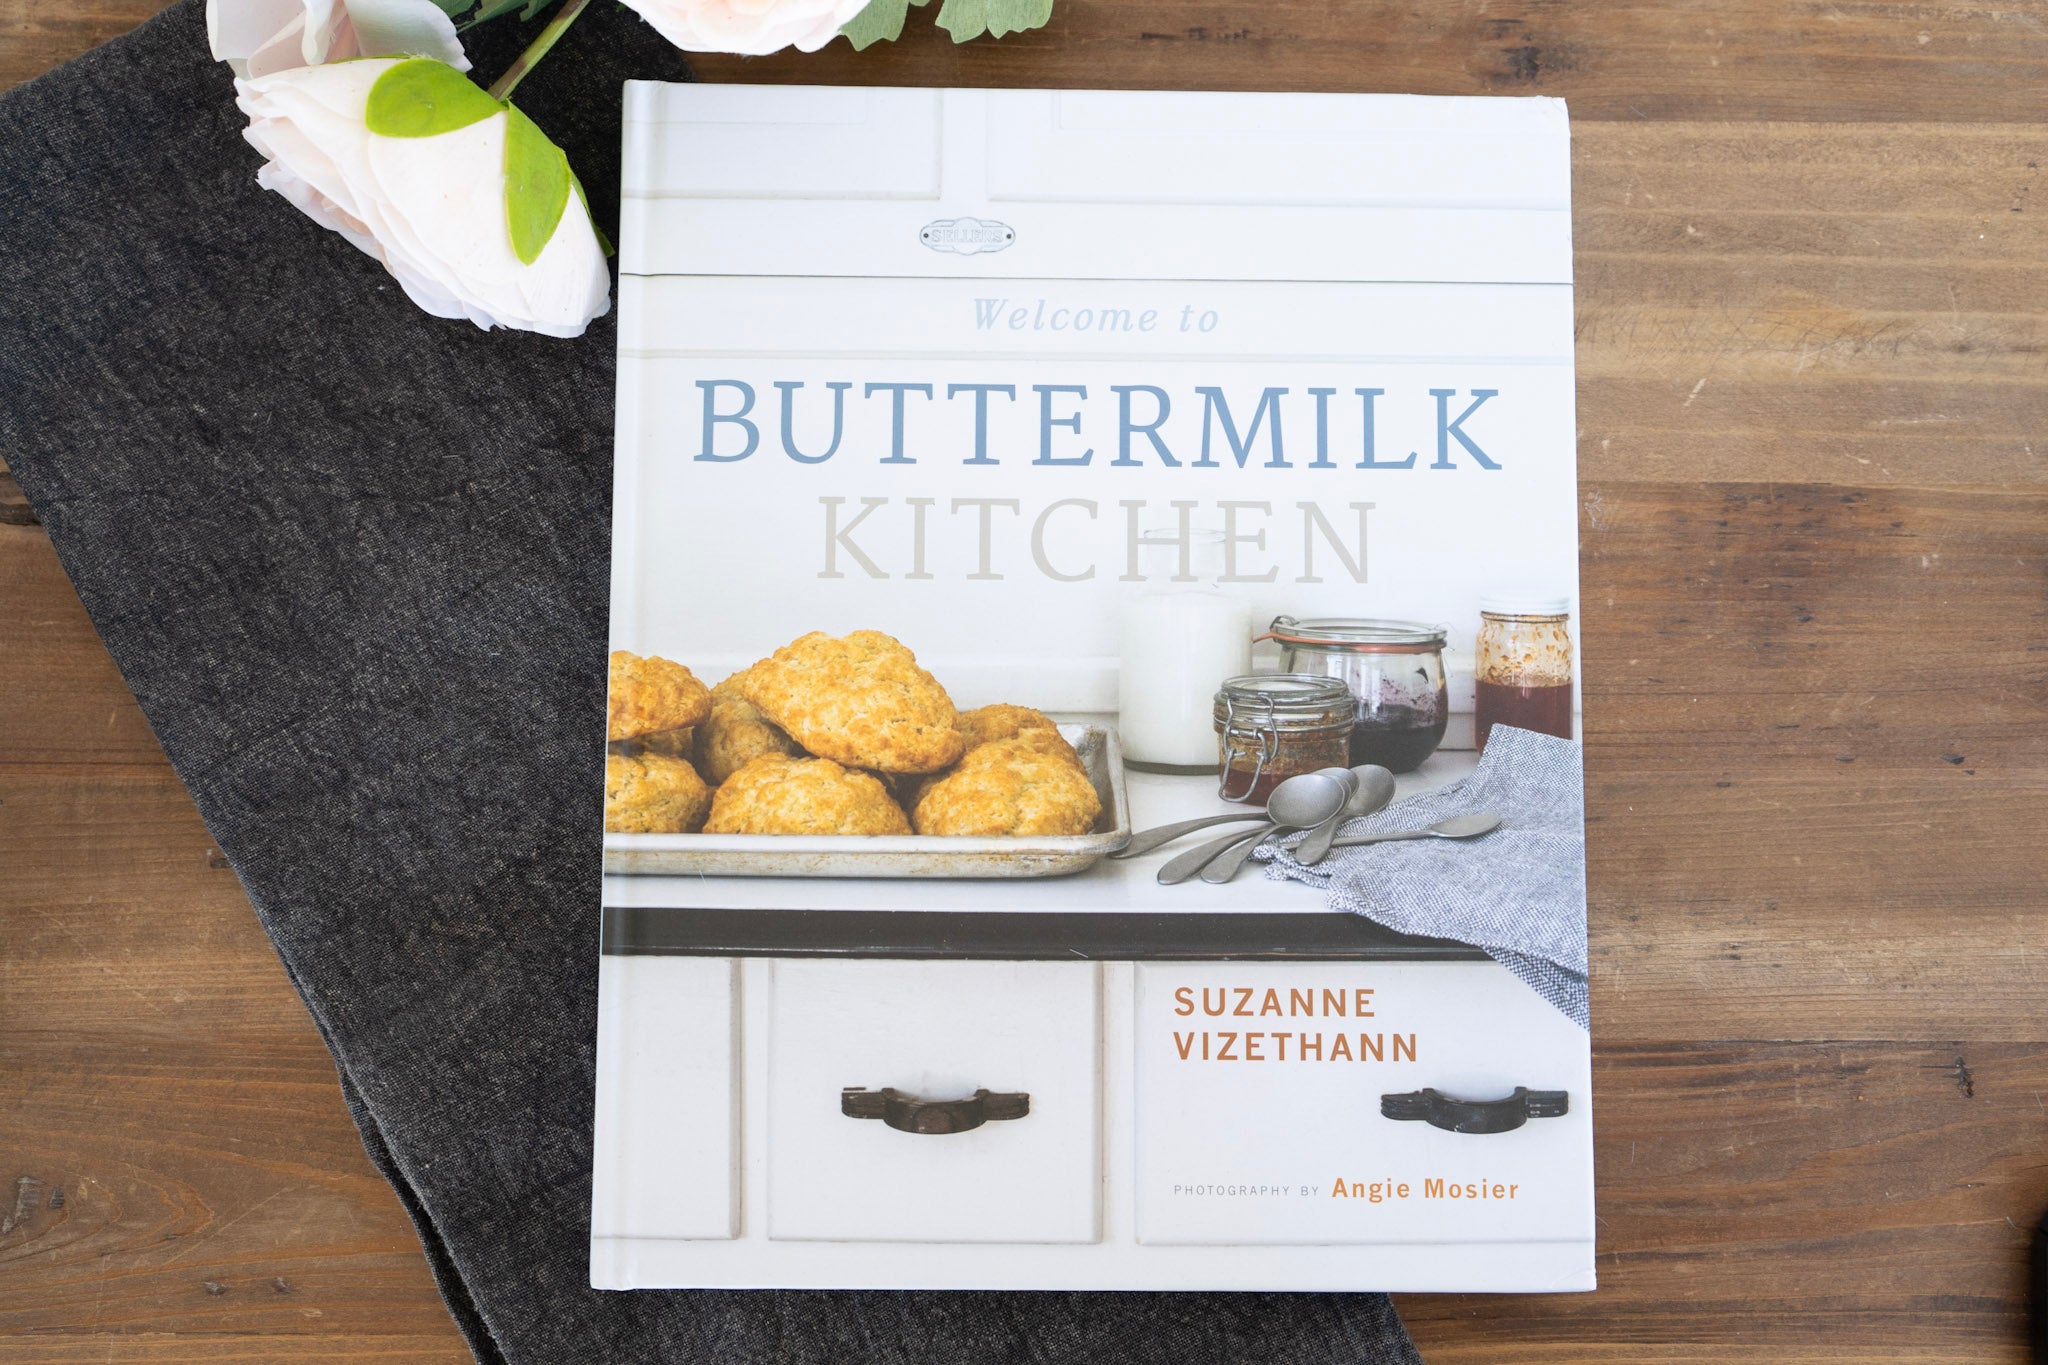 Welcome to Buttermilk Kitchen Cookbook